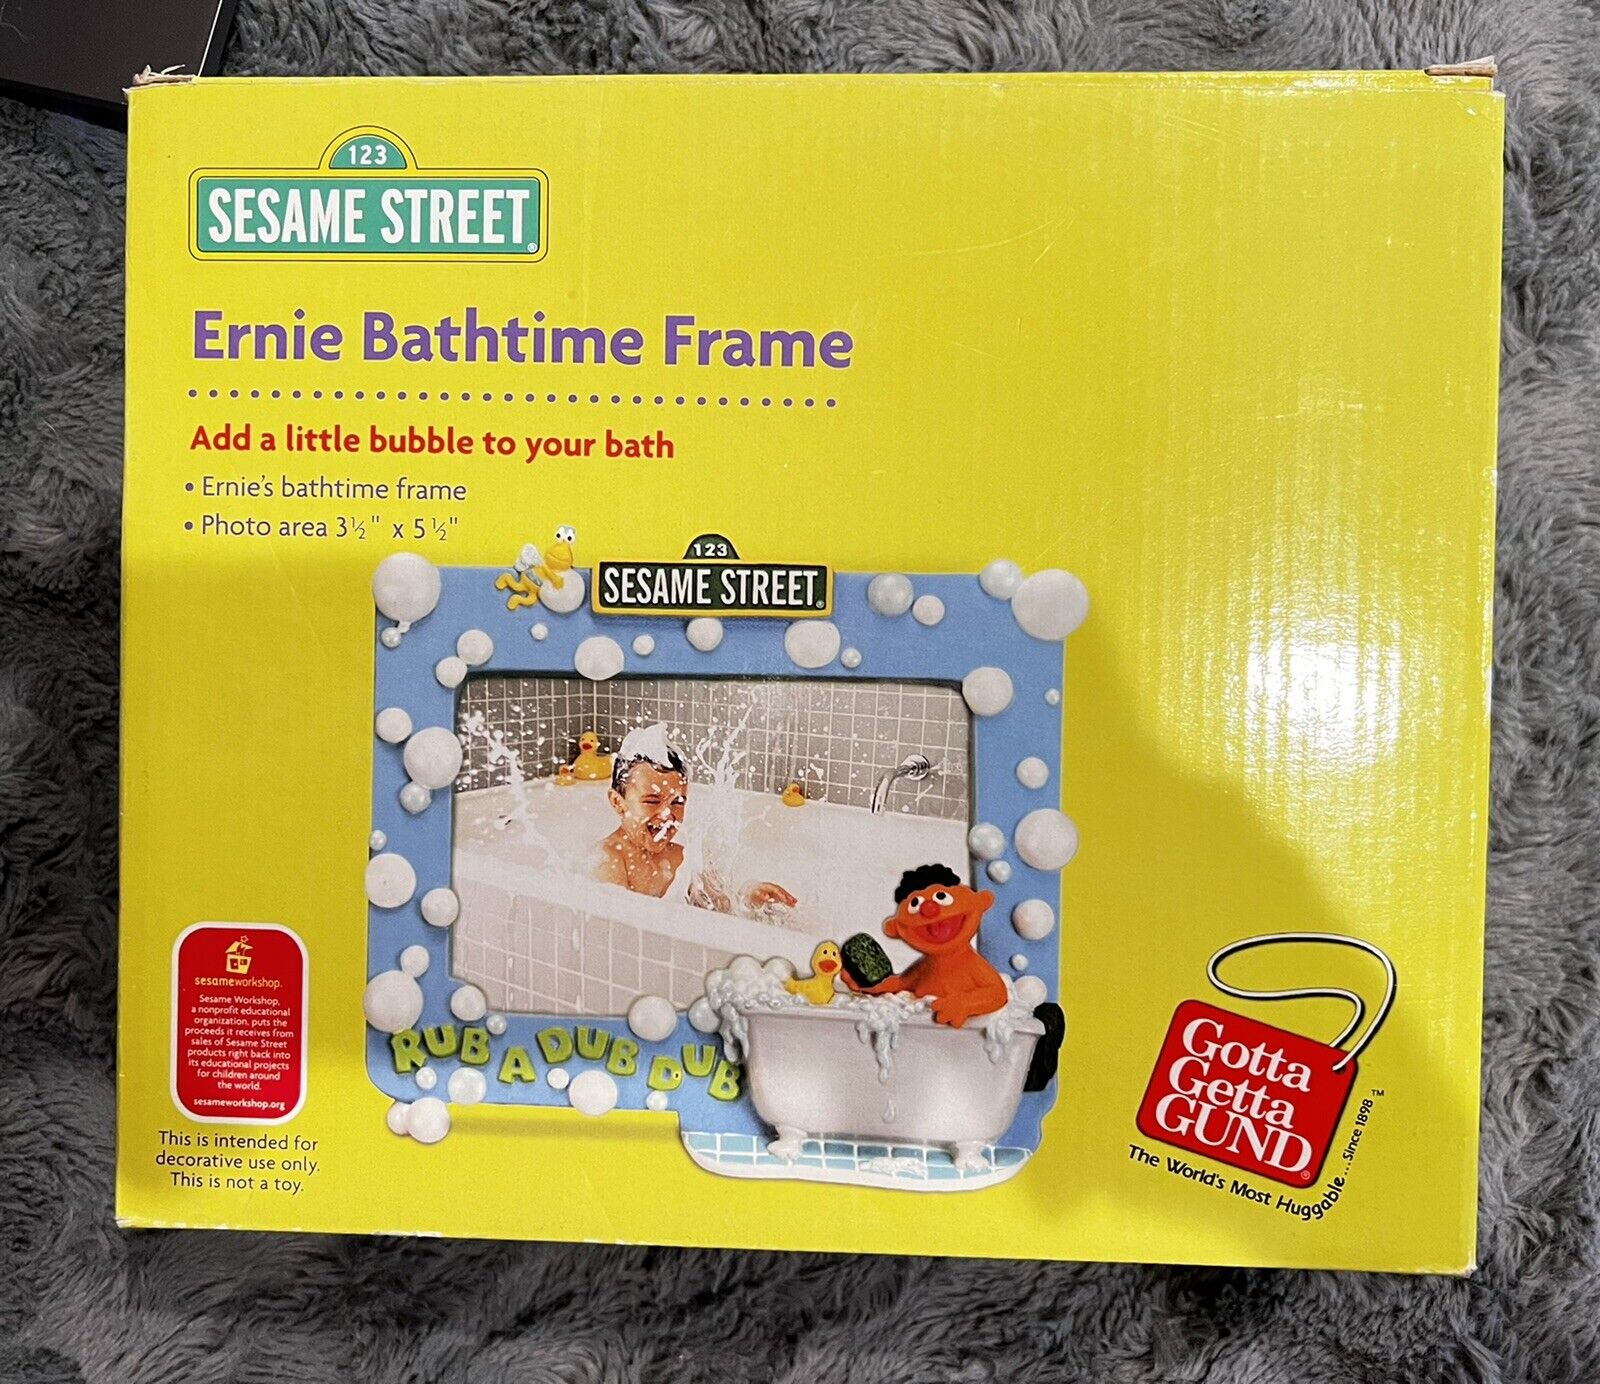 Gund Sesame Street Ernie Bathtime Frame New 2003 5 1/2”x 3 1/2” Rare Htf